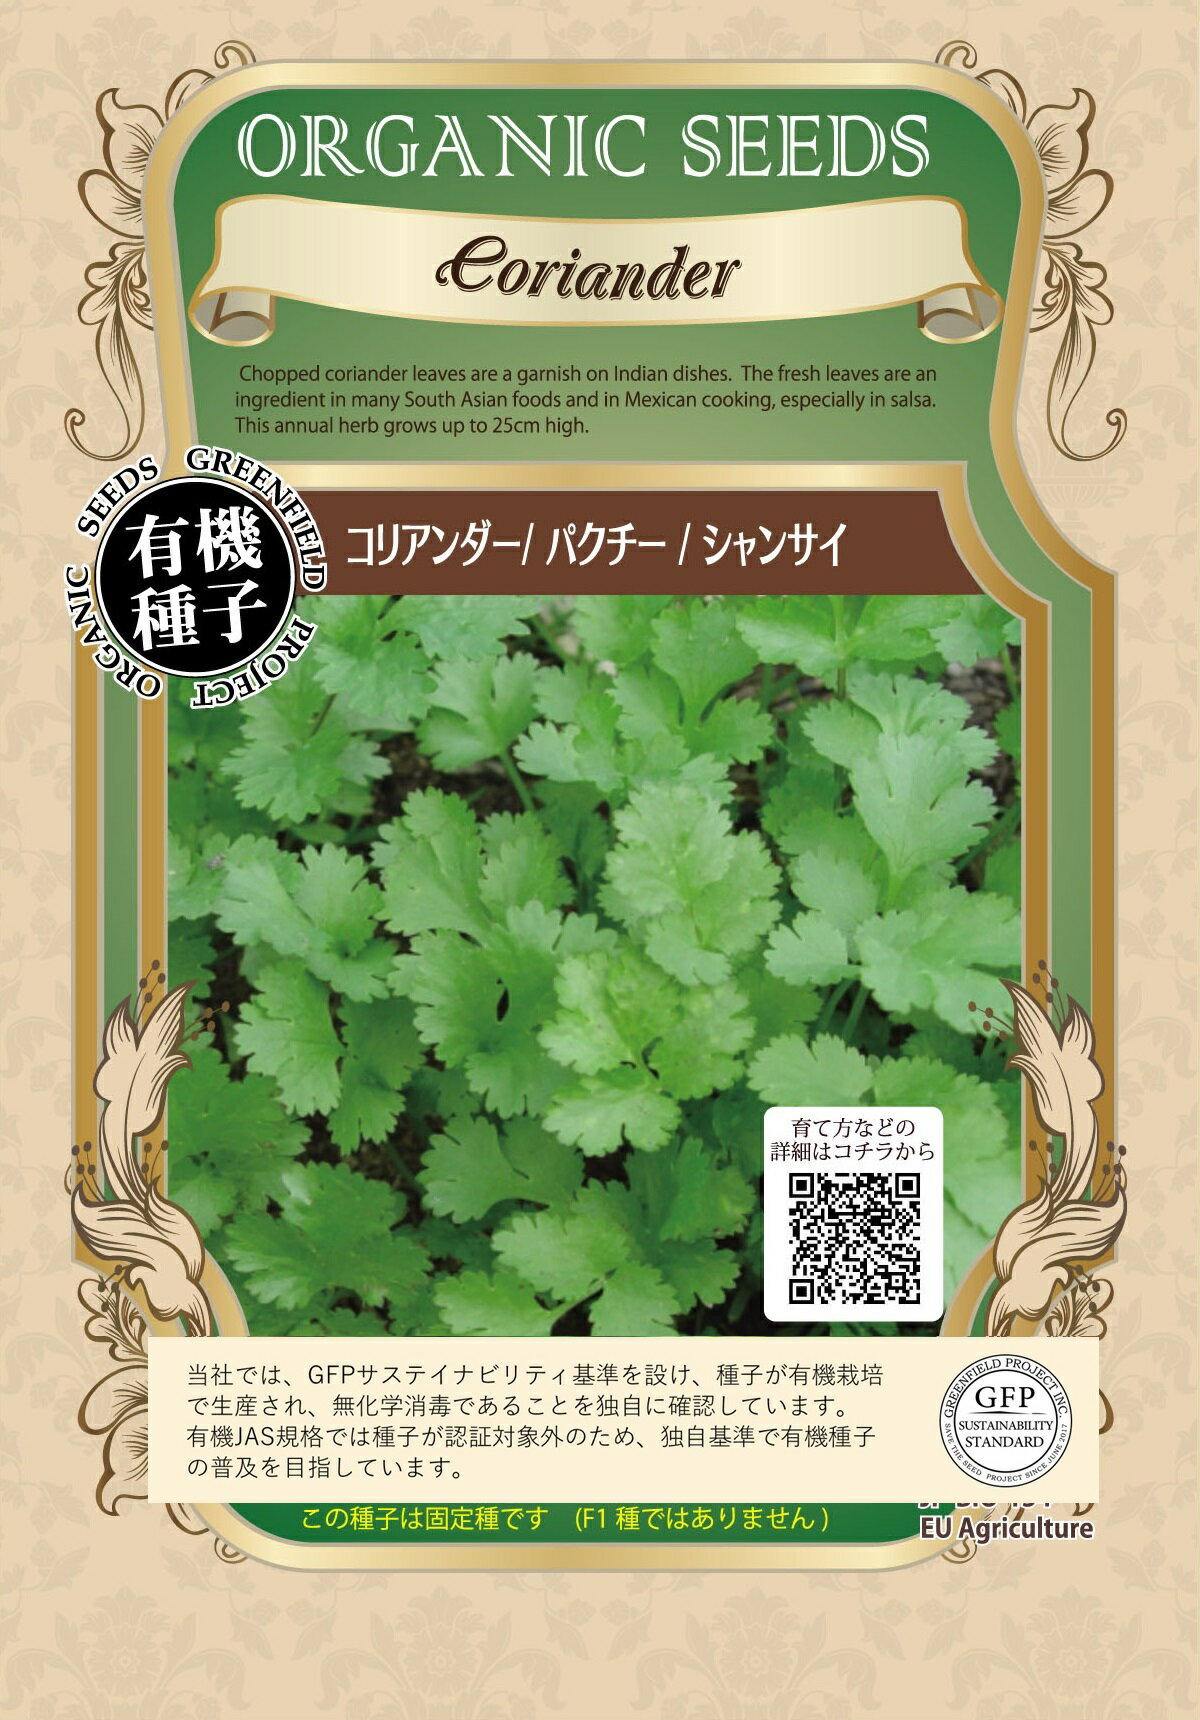 有機種子 グリーンフィールド A002 コリアンダー/パクチー/シャンサイ 3.0g タネ 固定種